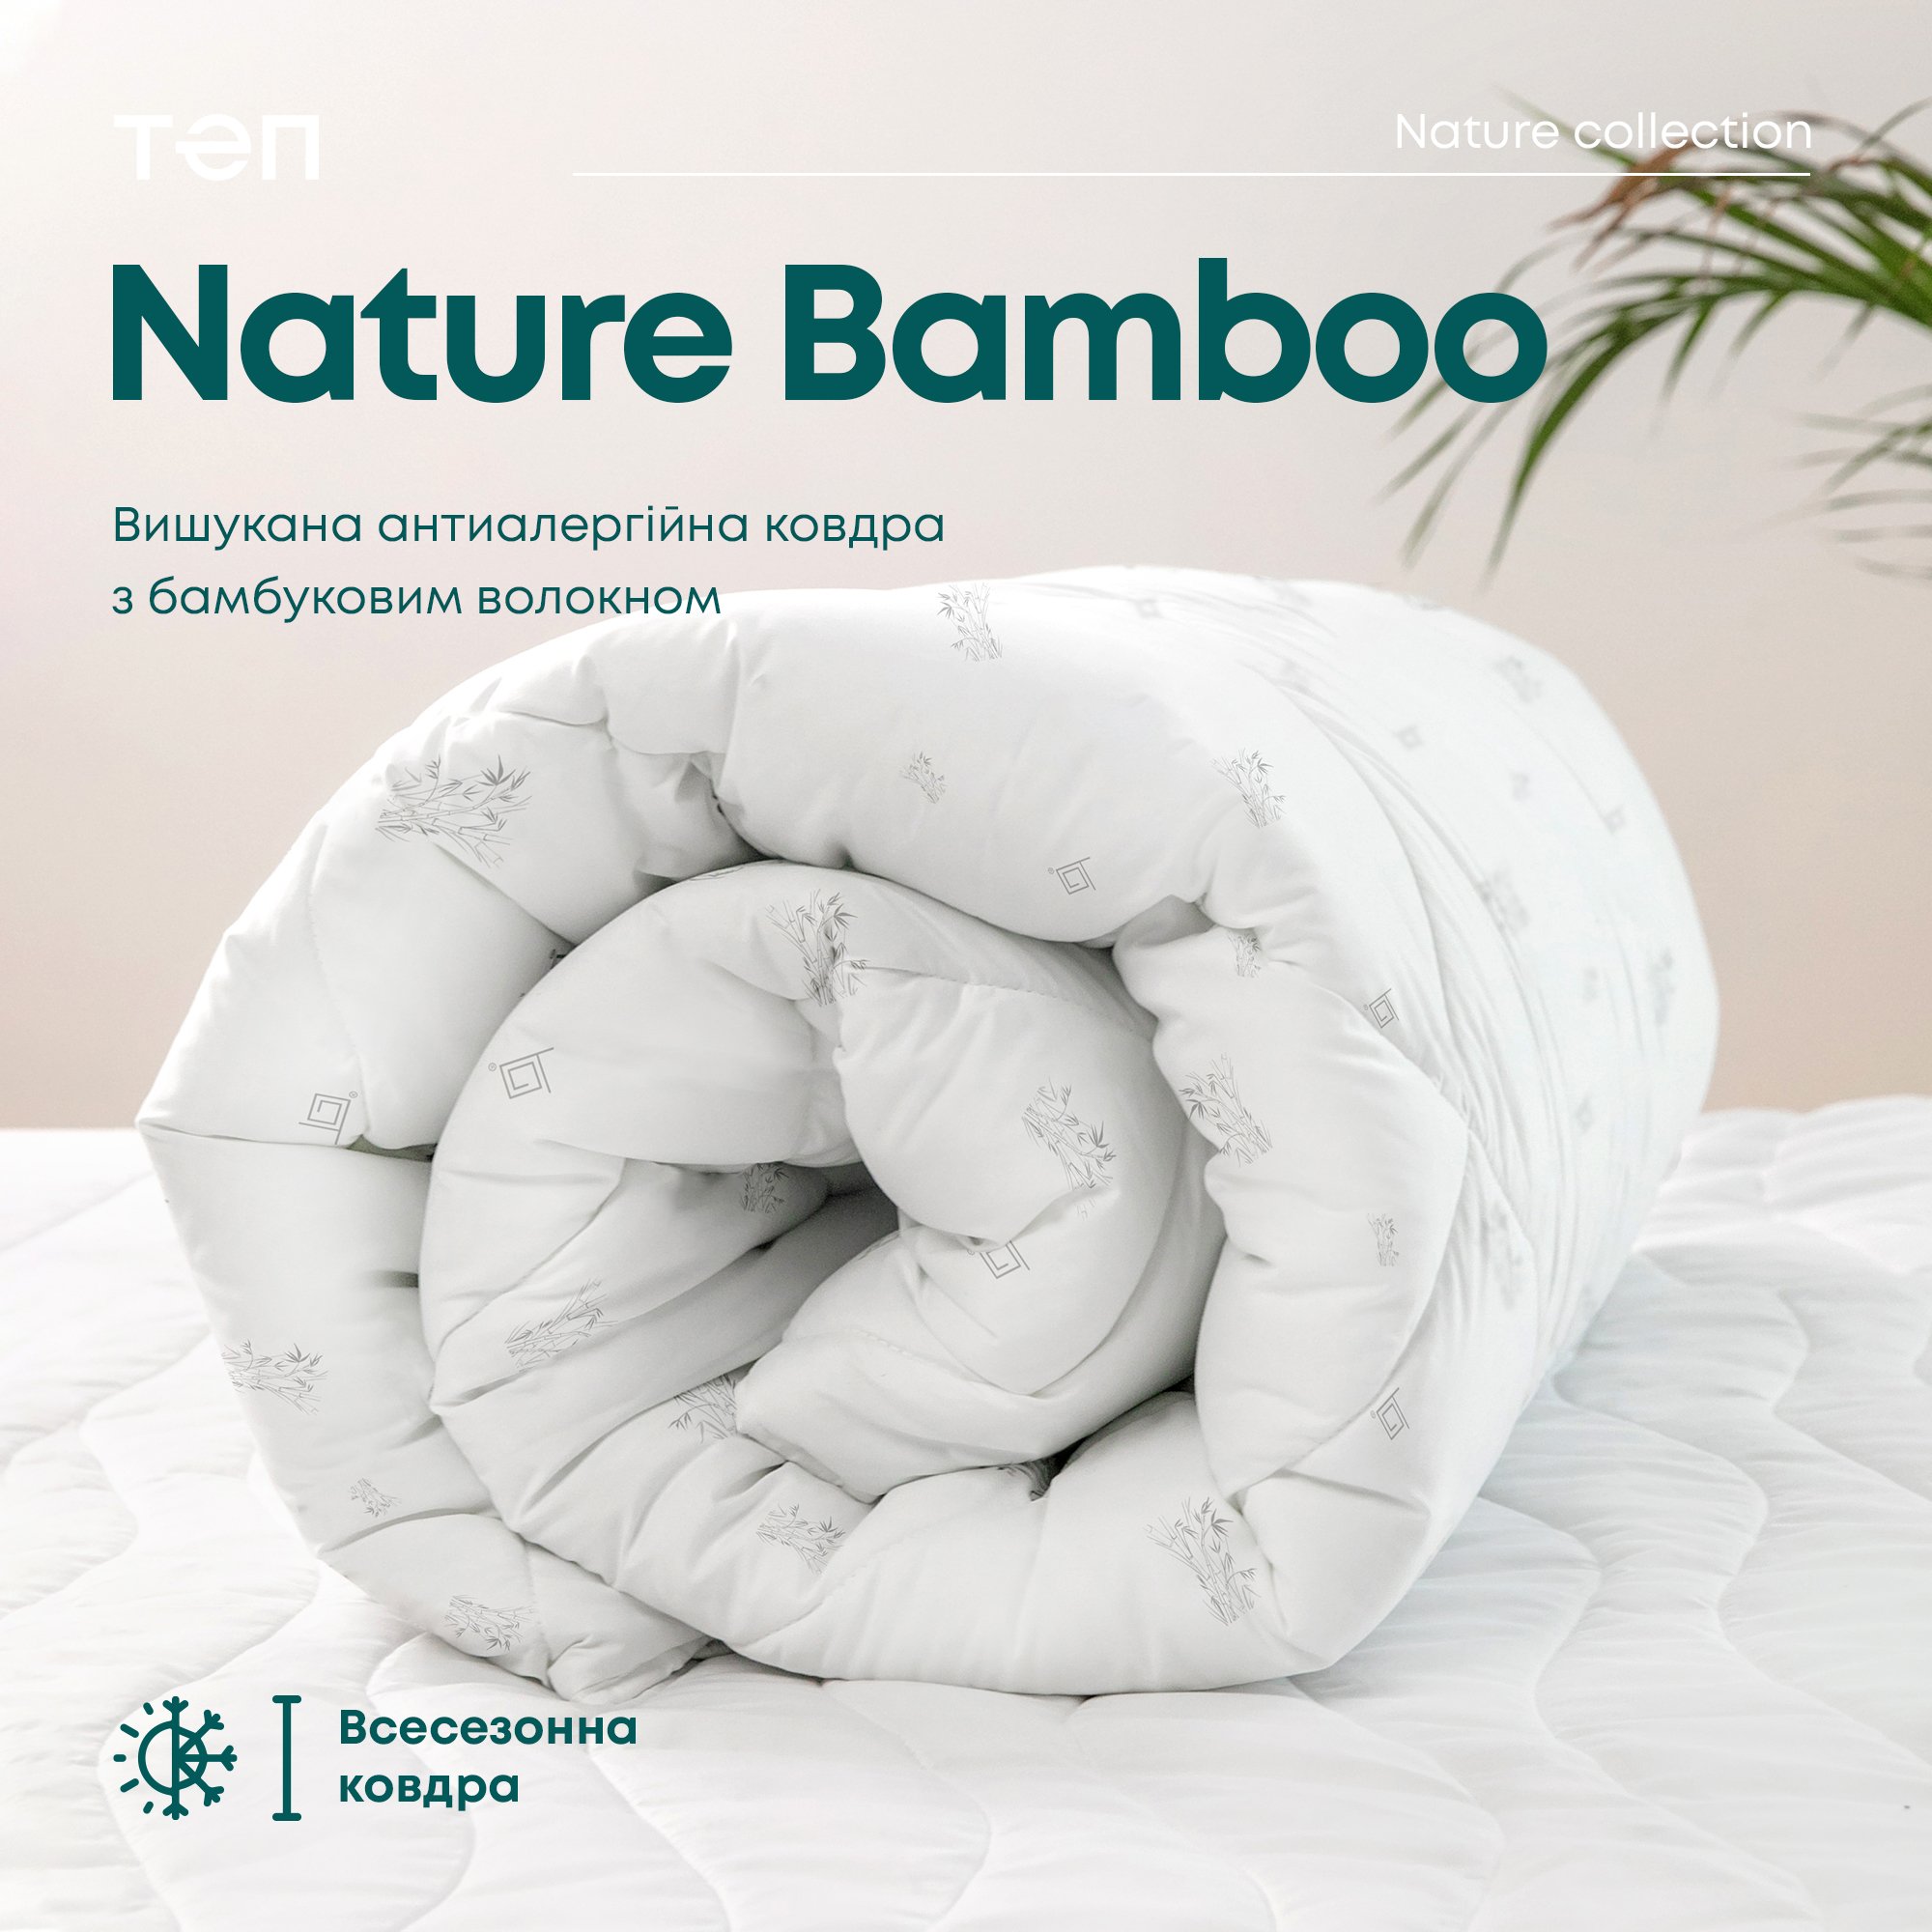 Одеяло ТЕП Природа Membrana Print Bamboo 180х210 см белое (1-00261_00000) - фото 9